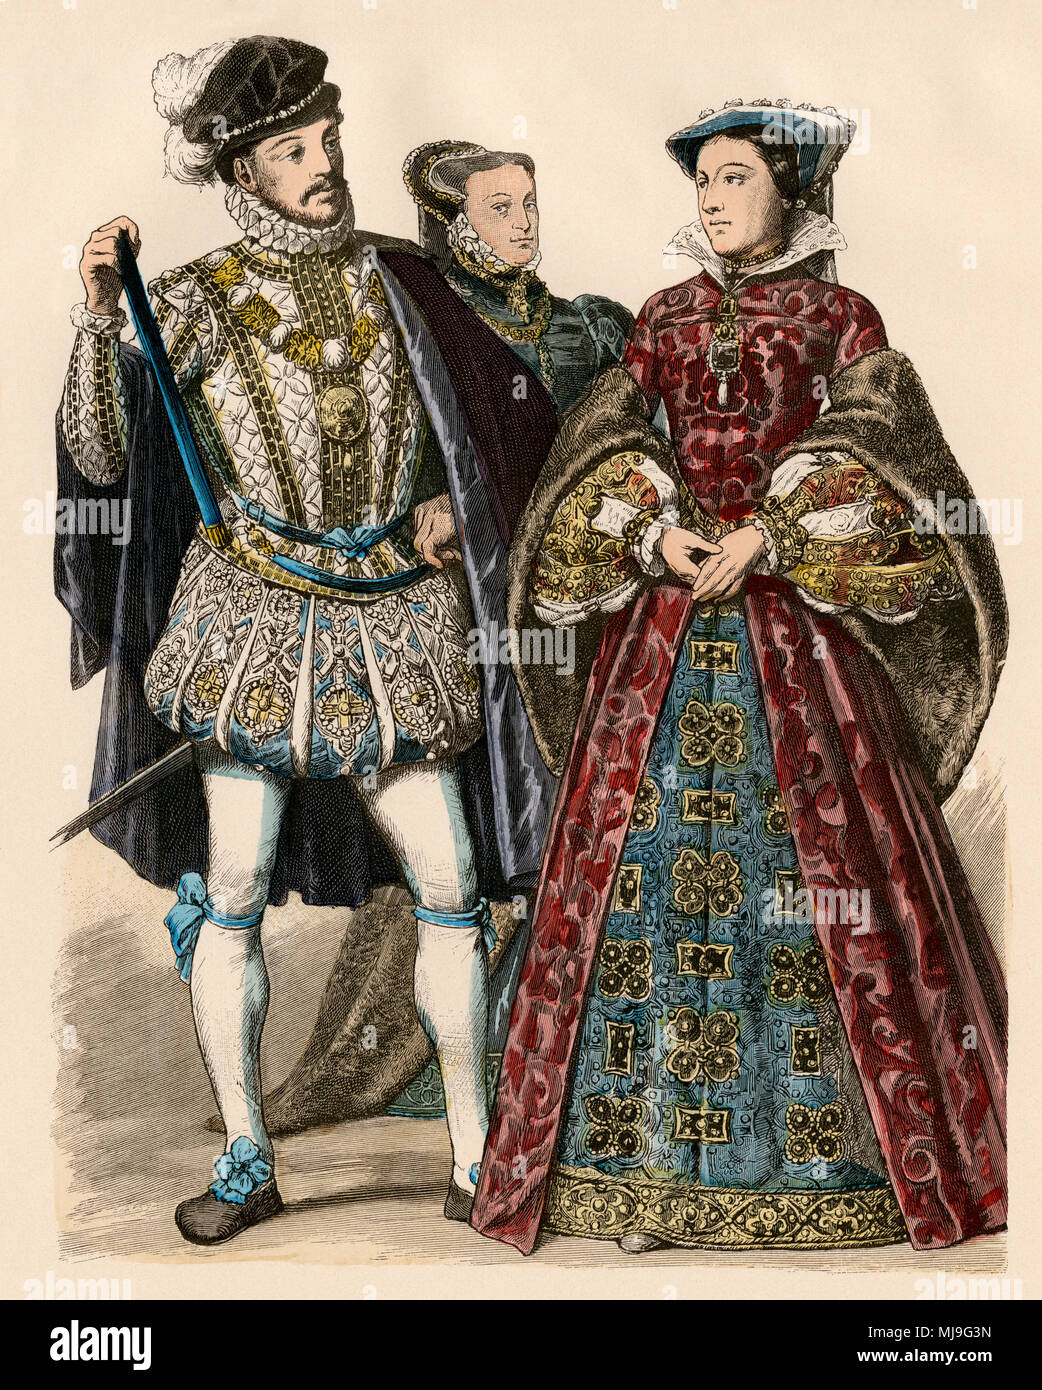 María, Reina de los Escoceses, con su segundo esposo Lord Darnley, 1566. Mano de color imprimir Foto de stock